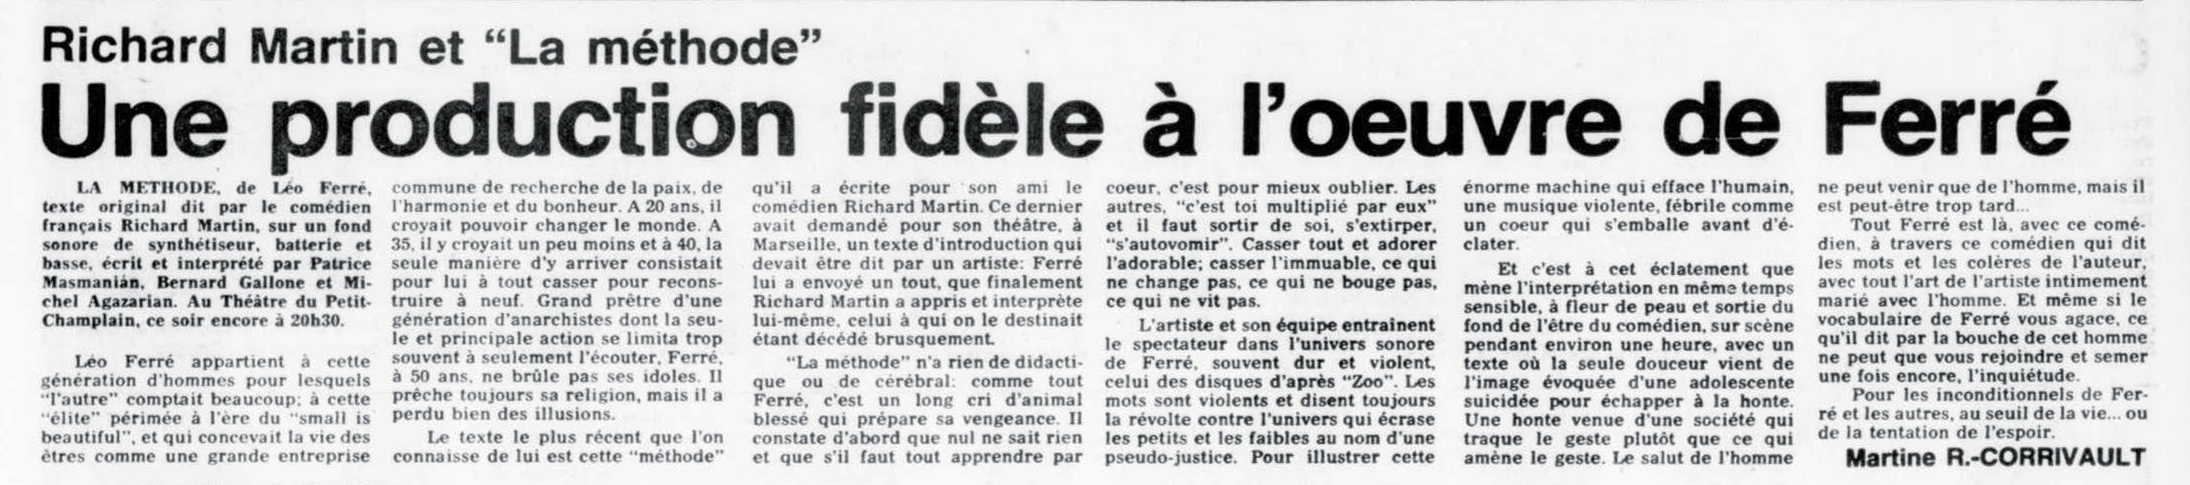 Léo Ferré - Le soleil, 1896- (Québec), 14 juillet 1980, Cahier A